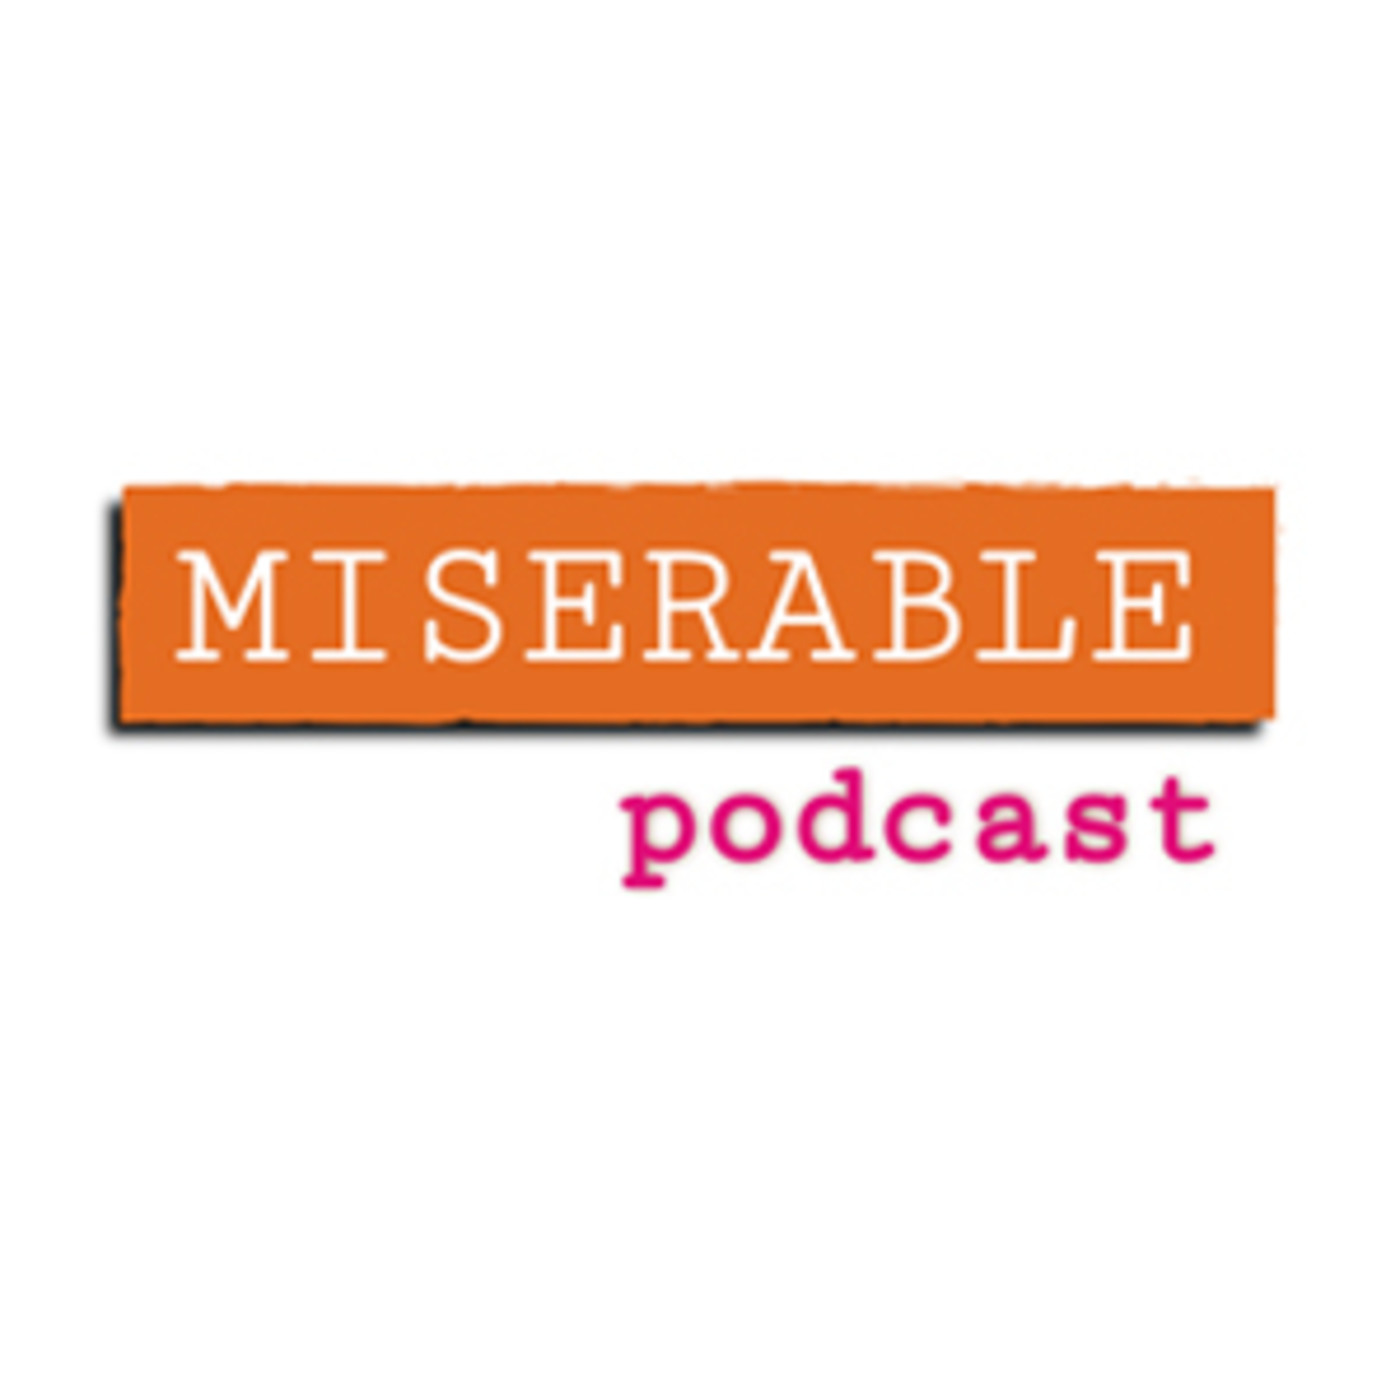 Miserable Podcast - Cuarentena y confusión #1